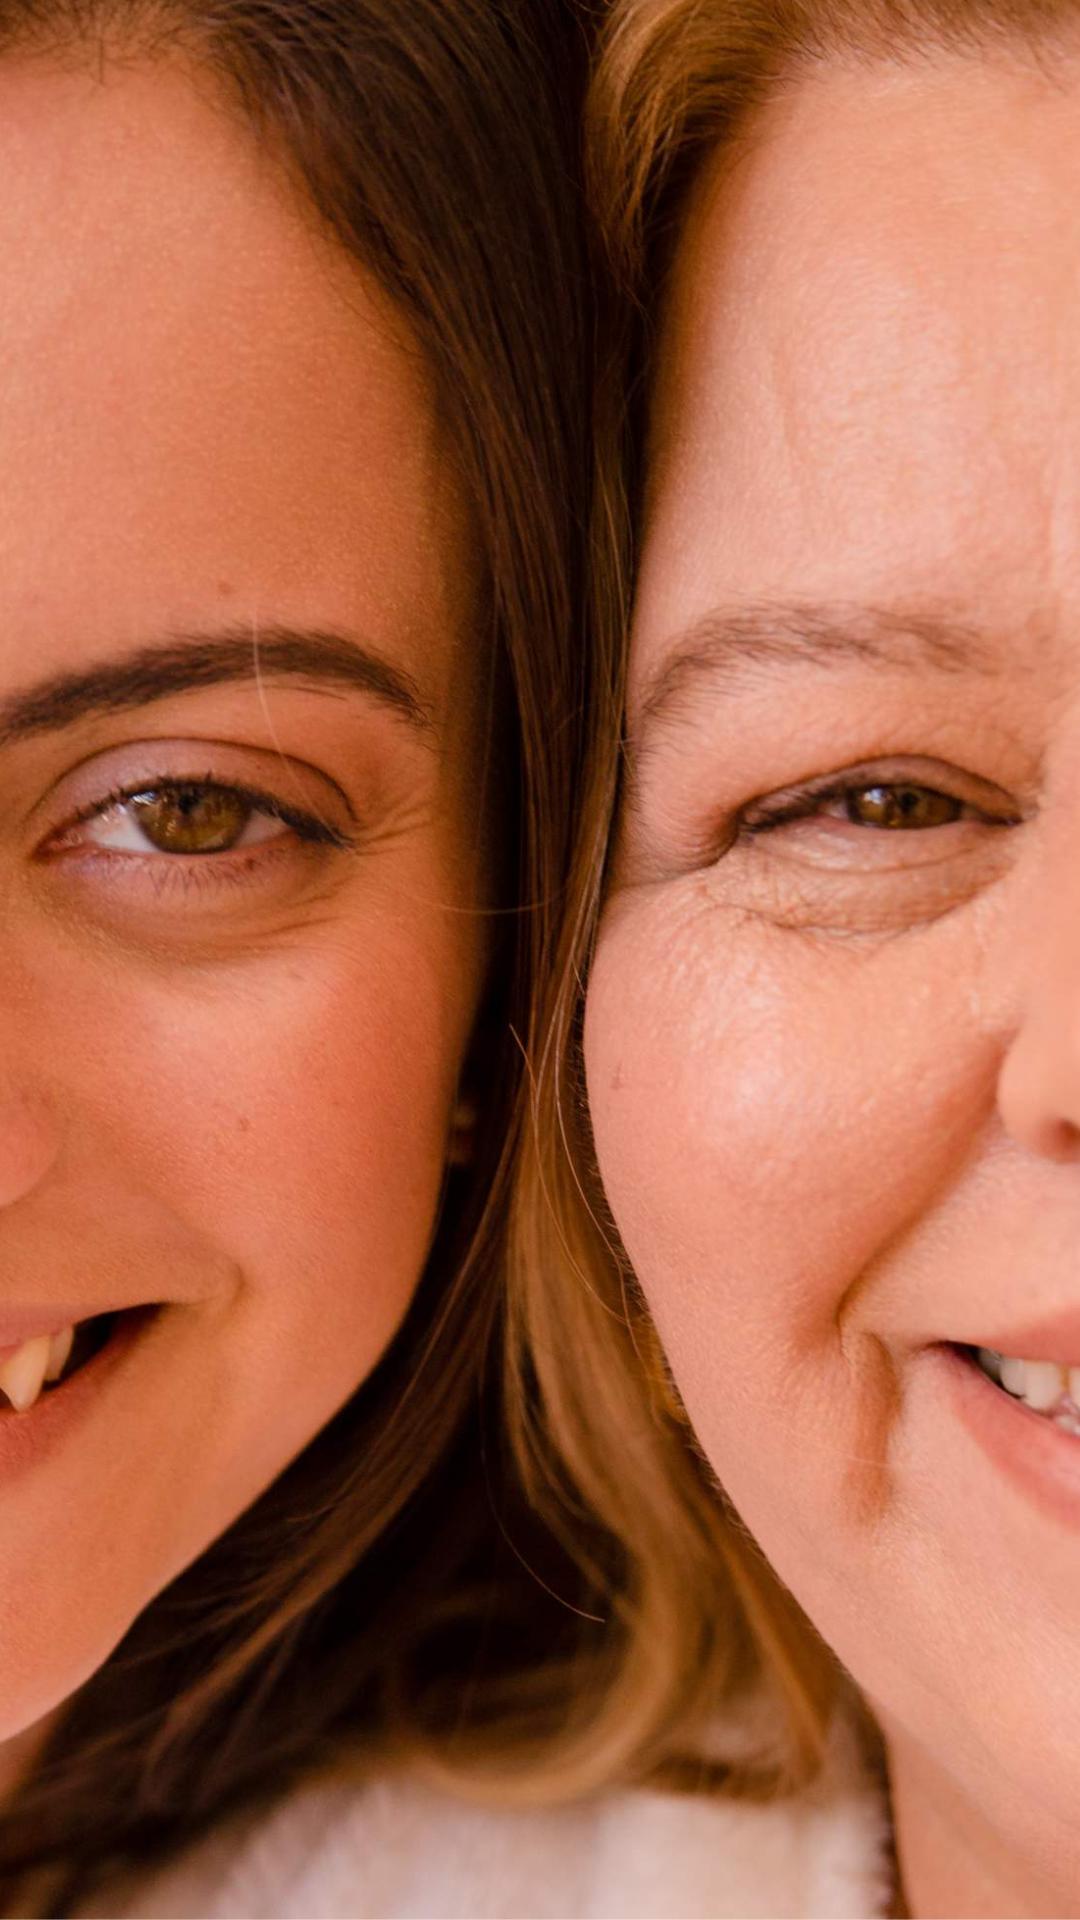 Foto de mãe e filha lado a lado, com foco no rosto sorridente de ambas e no olhar. As cabeças estão unidas e a foto mostra metade da face de casa uma.